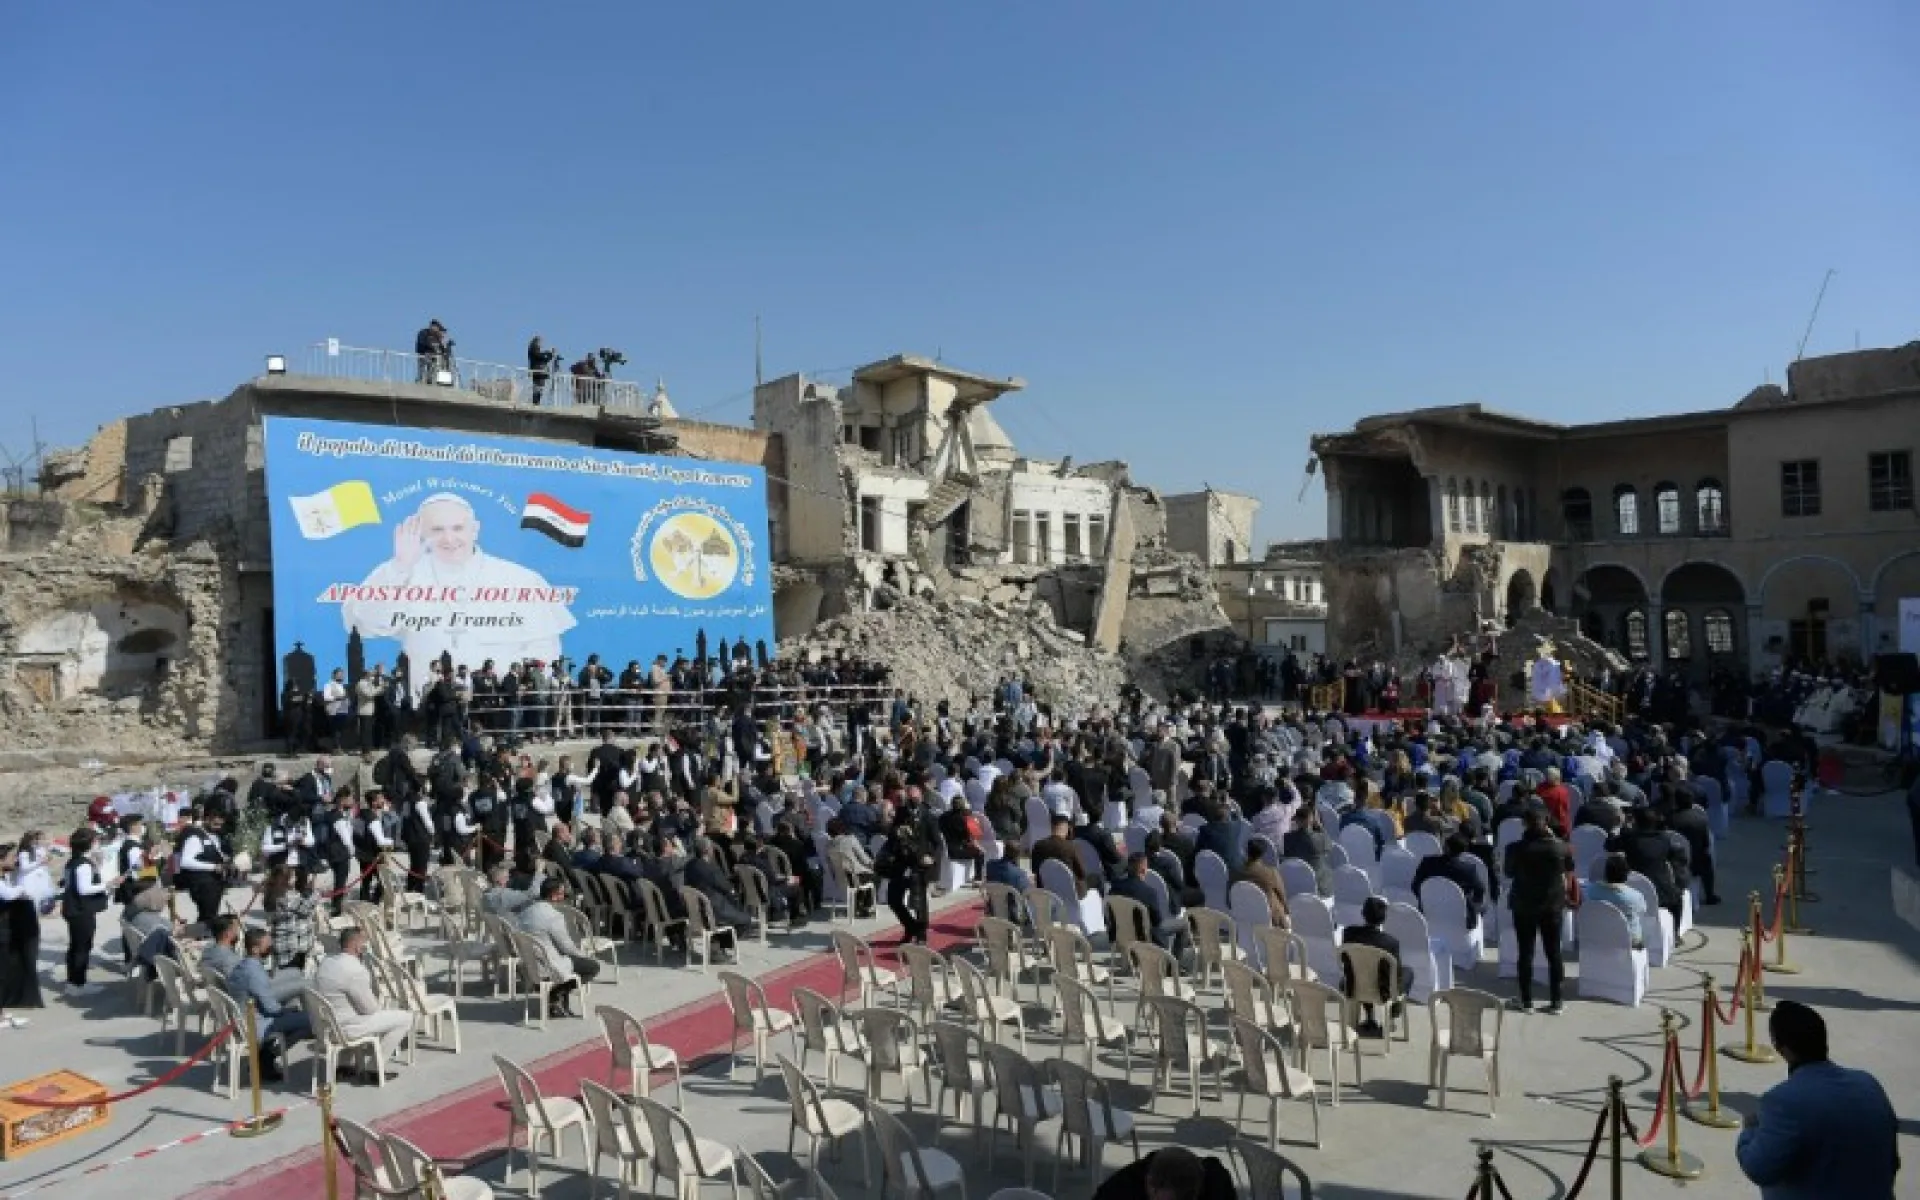 Papež navštívil irácký Kurdistán a povzbudil tamní křesťany - Fotka 1 - Echo24.cz